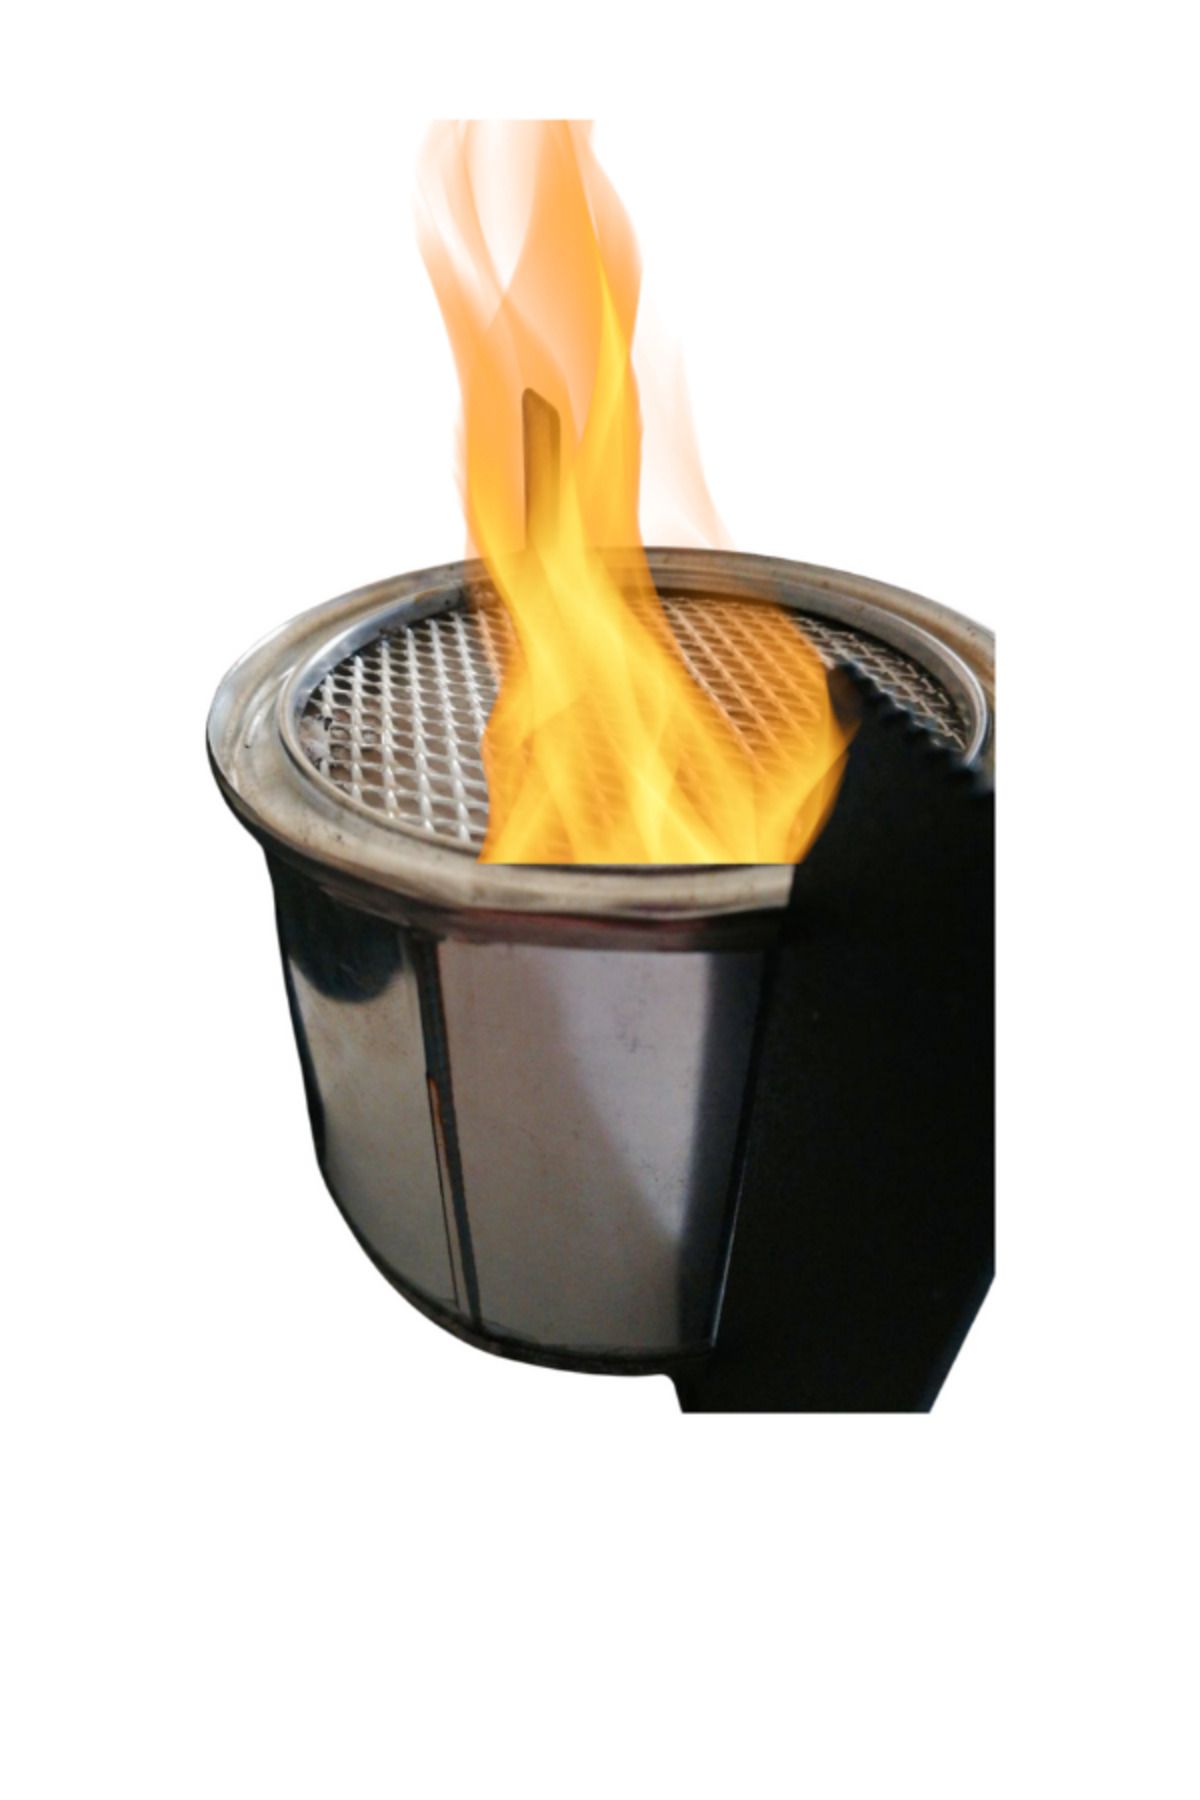 Miss Flora Şömine ocak kamp ateş yakma yemek ısıtma + 1 LT bioethanol şömine yakıtı hediye